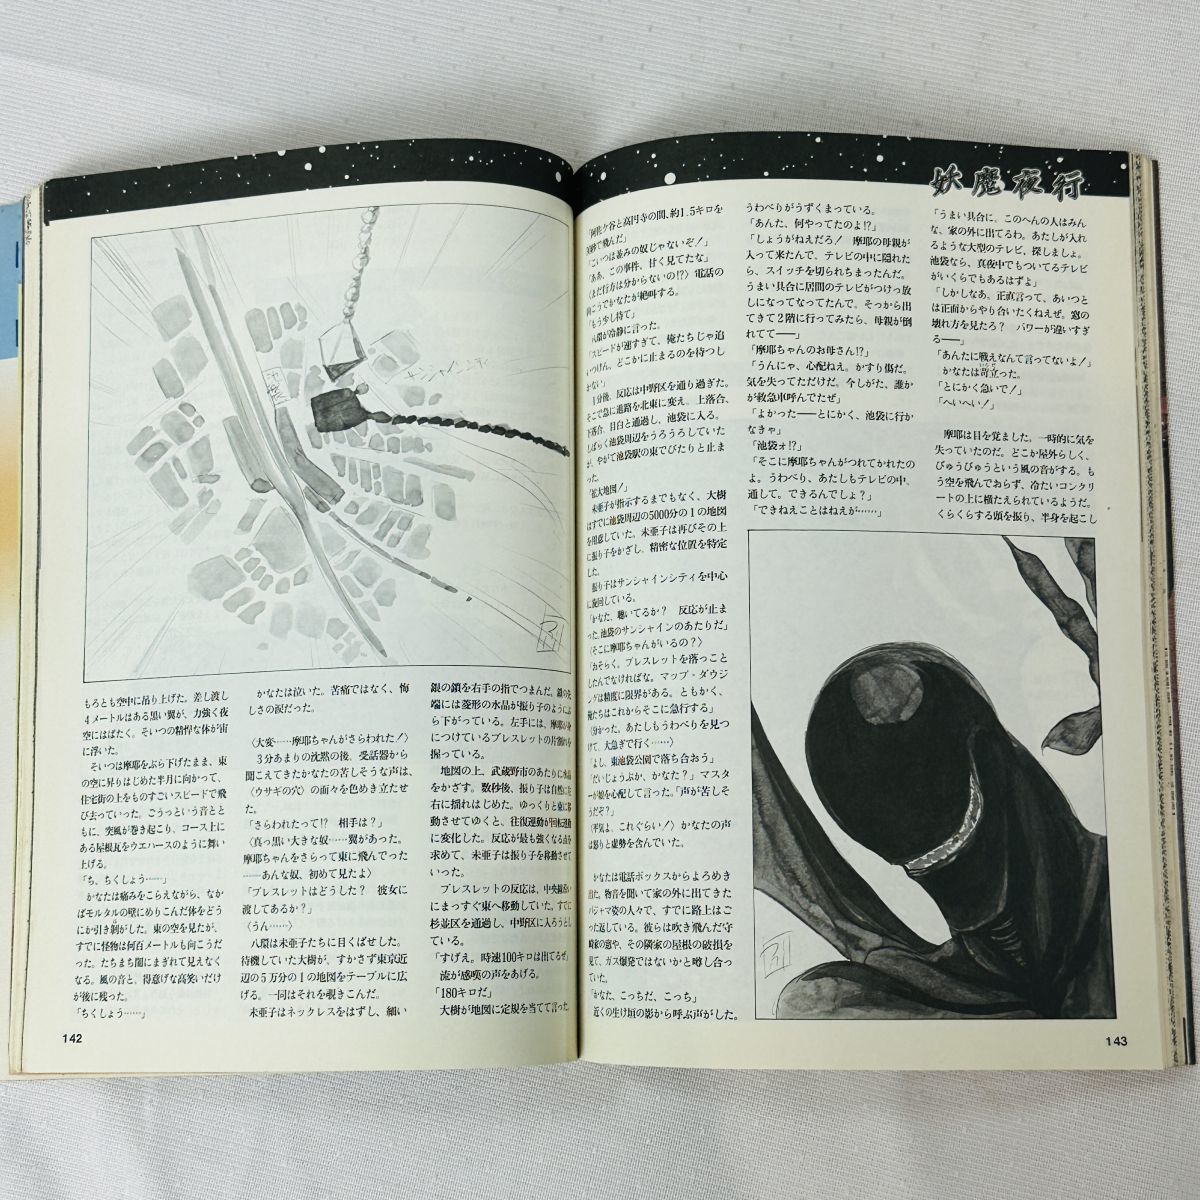 GA314 универсальный PRG журнал comp PRG Vol.1 выпуск человек / Kadokawa весна . выпуск место / Kadokawa Shoten 1991 год 11 месяц 30 день departure .